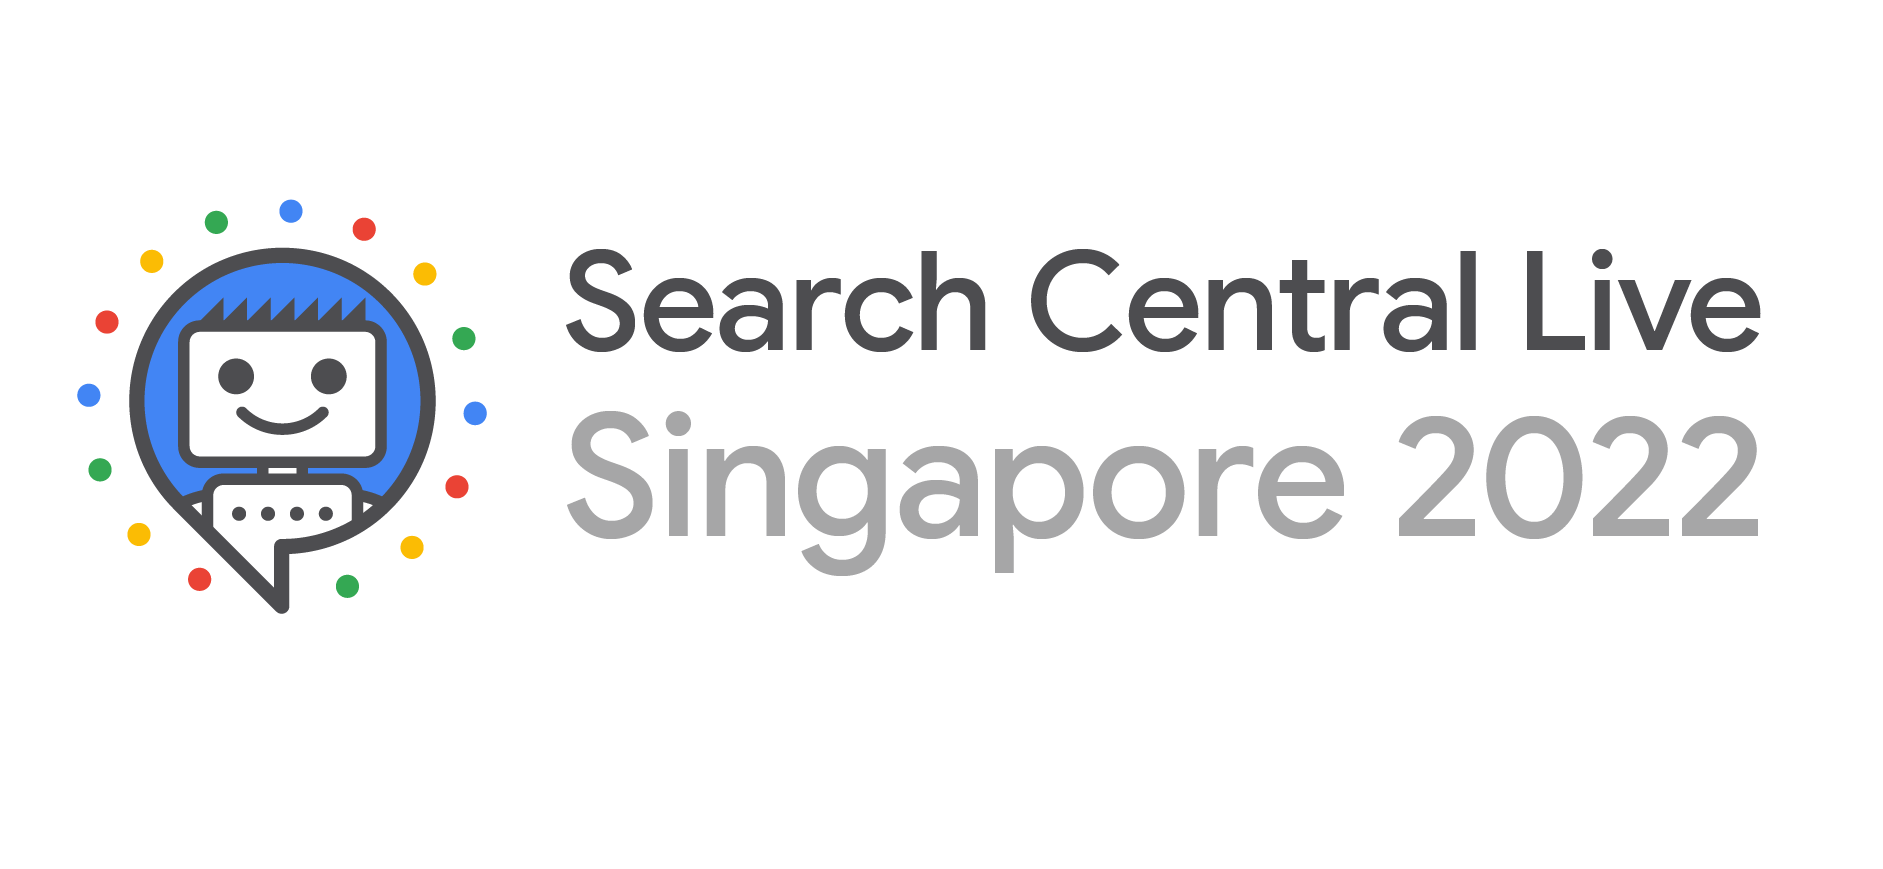 Logotipo da Search Central Live Singapore 2022